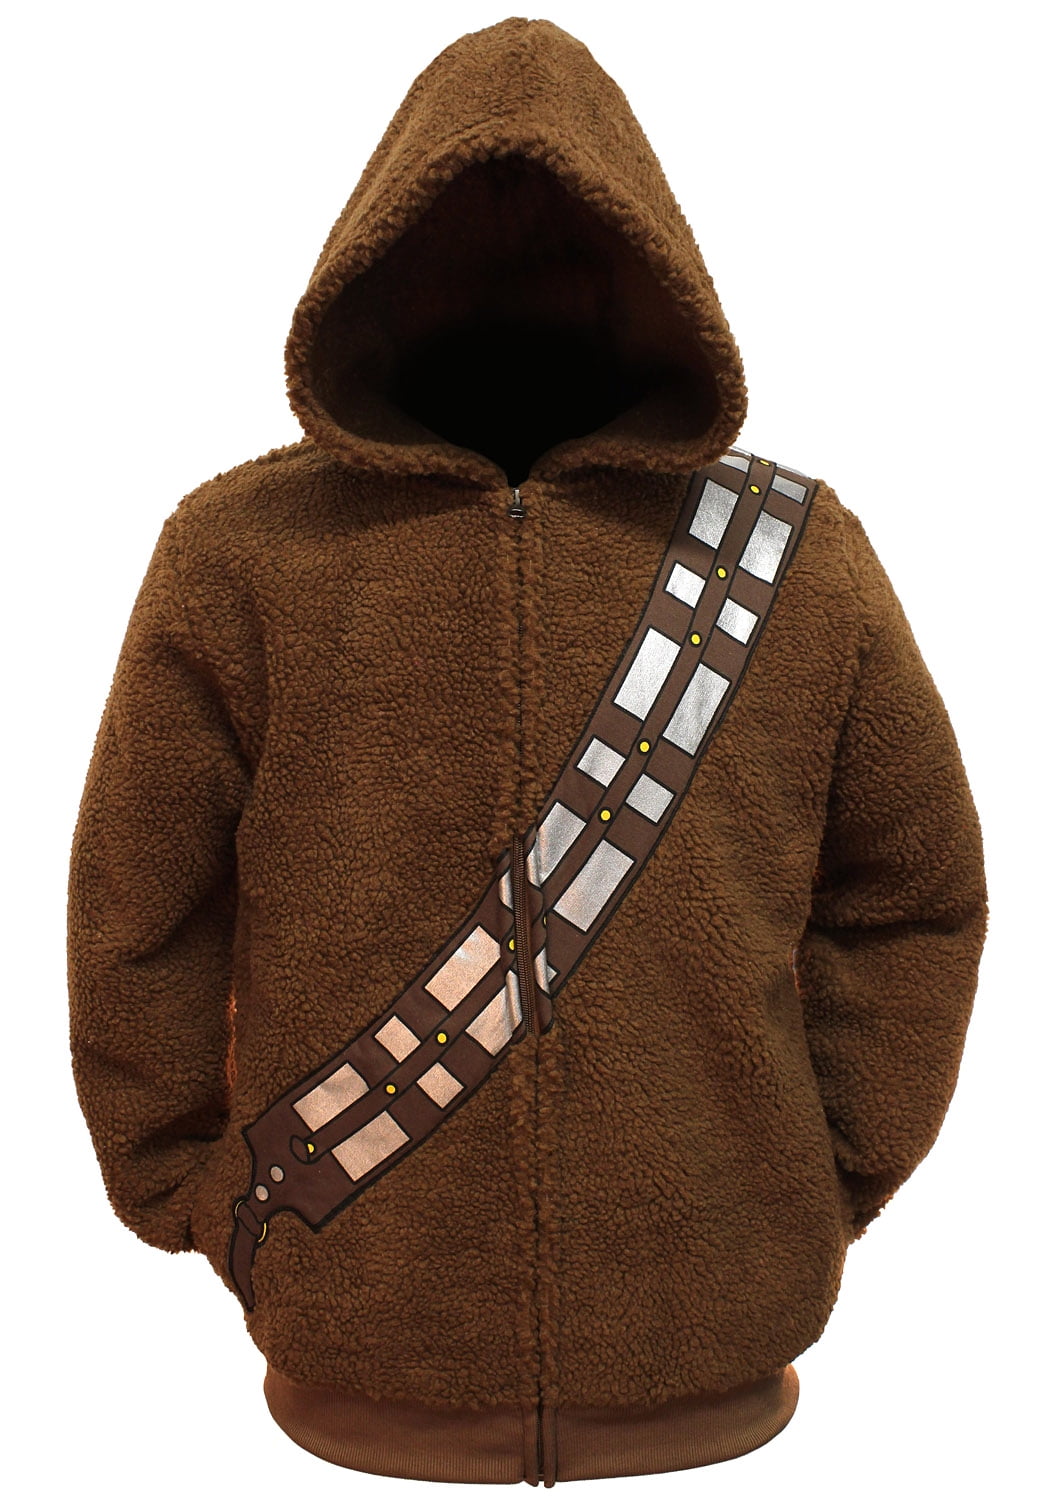 Star Wars Chewbacca Fleece Zip-Up Costume Hoodie